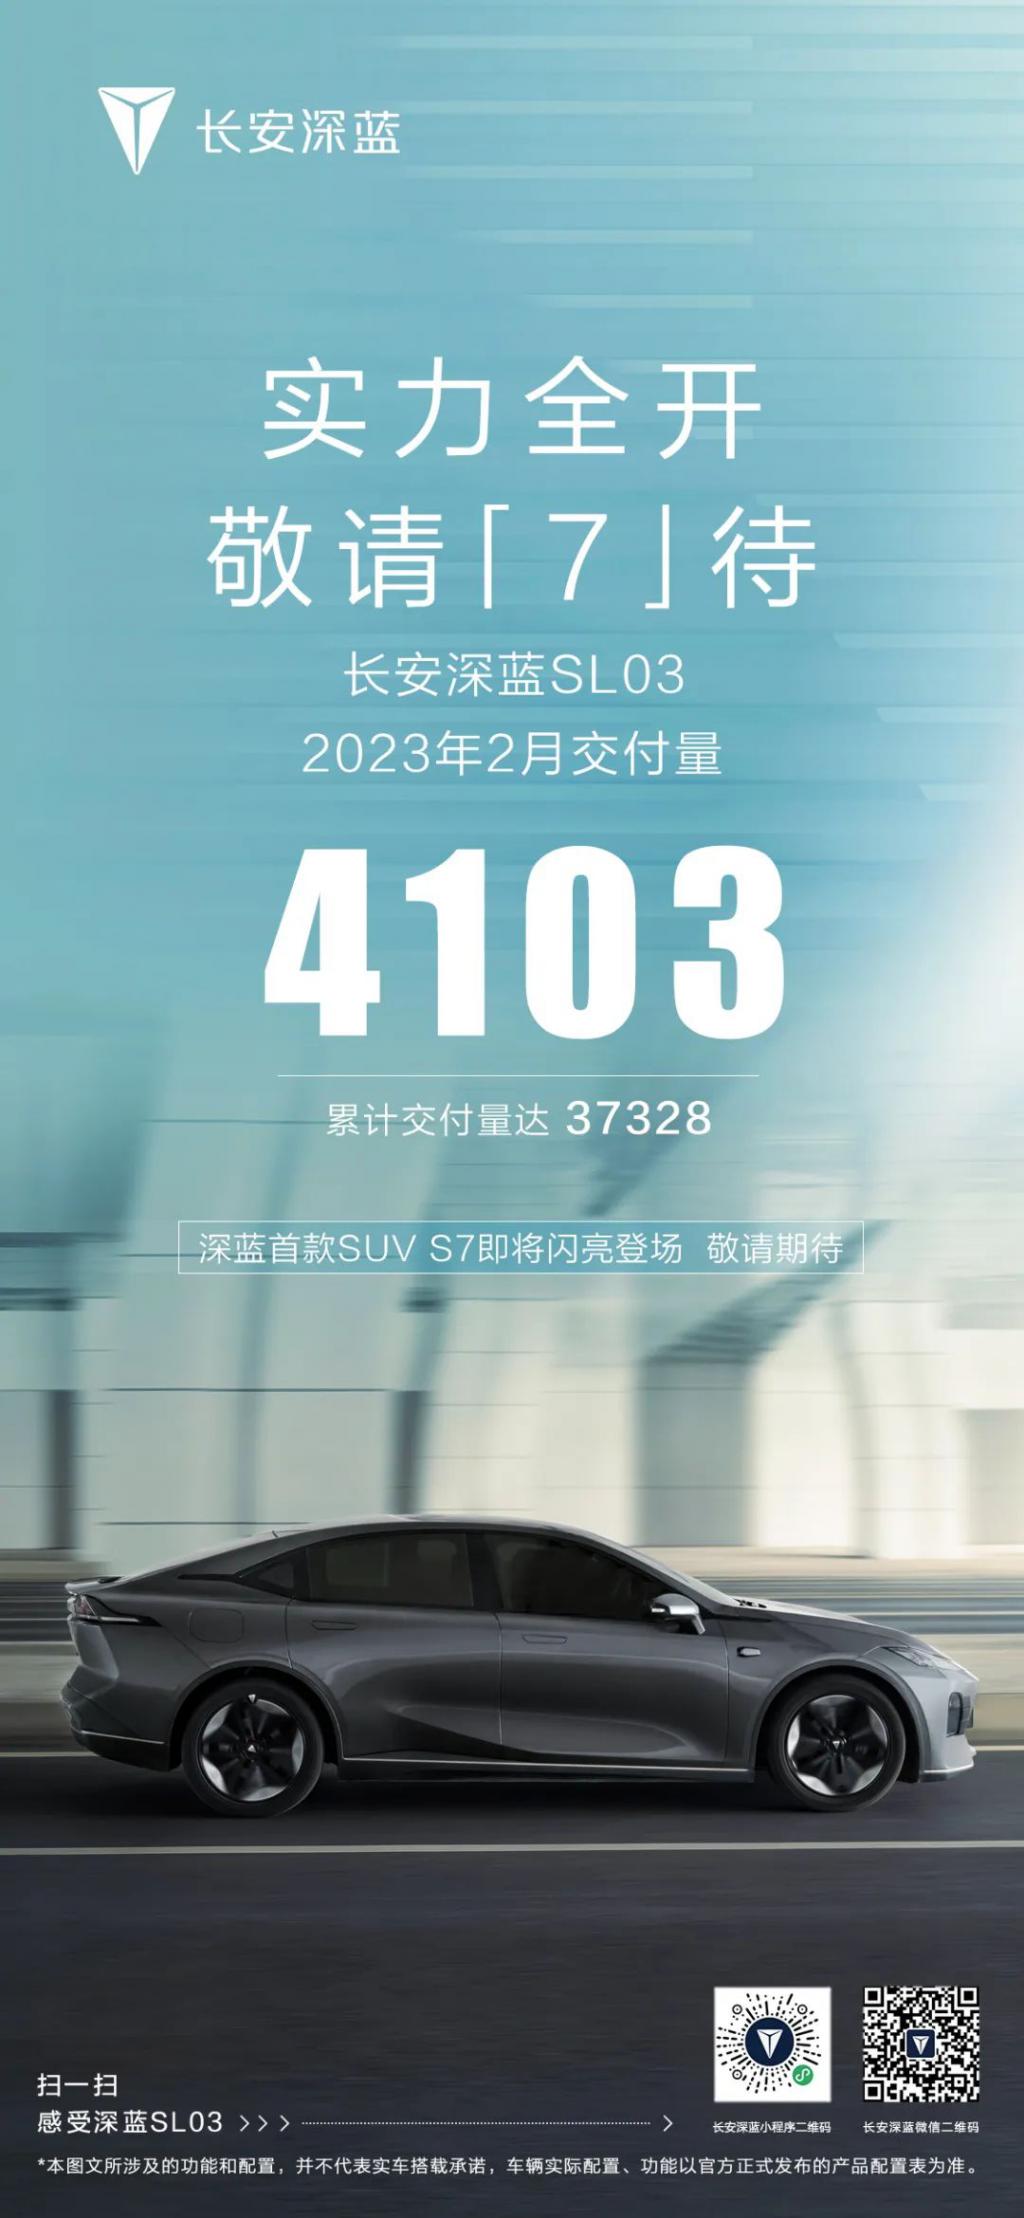 2 月长安深蓝 SL03 交付 4103 辆，累计交付 37,328 辆